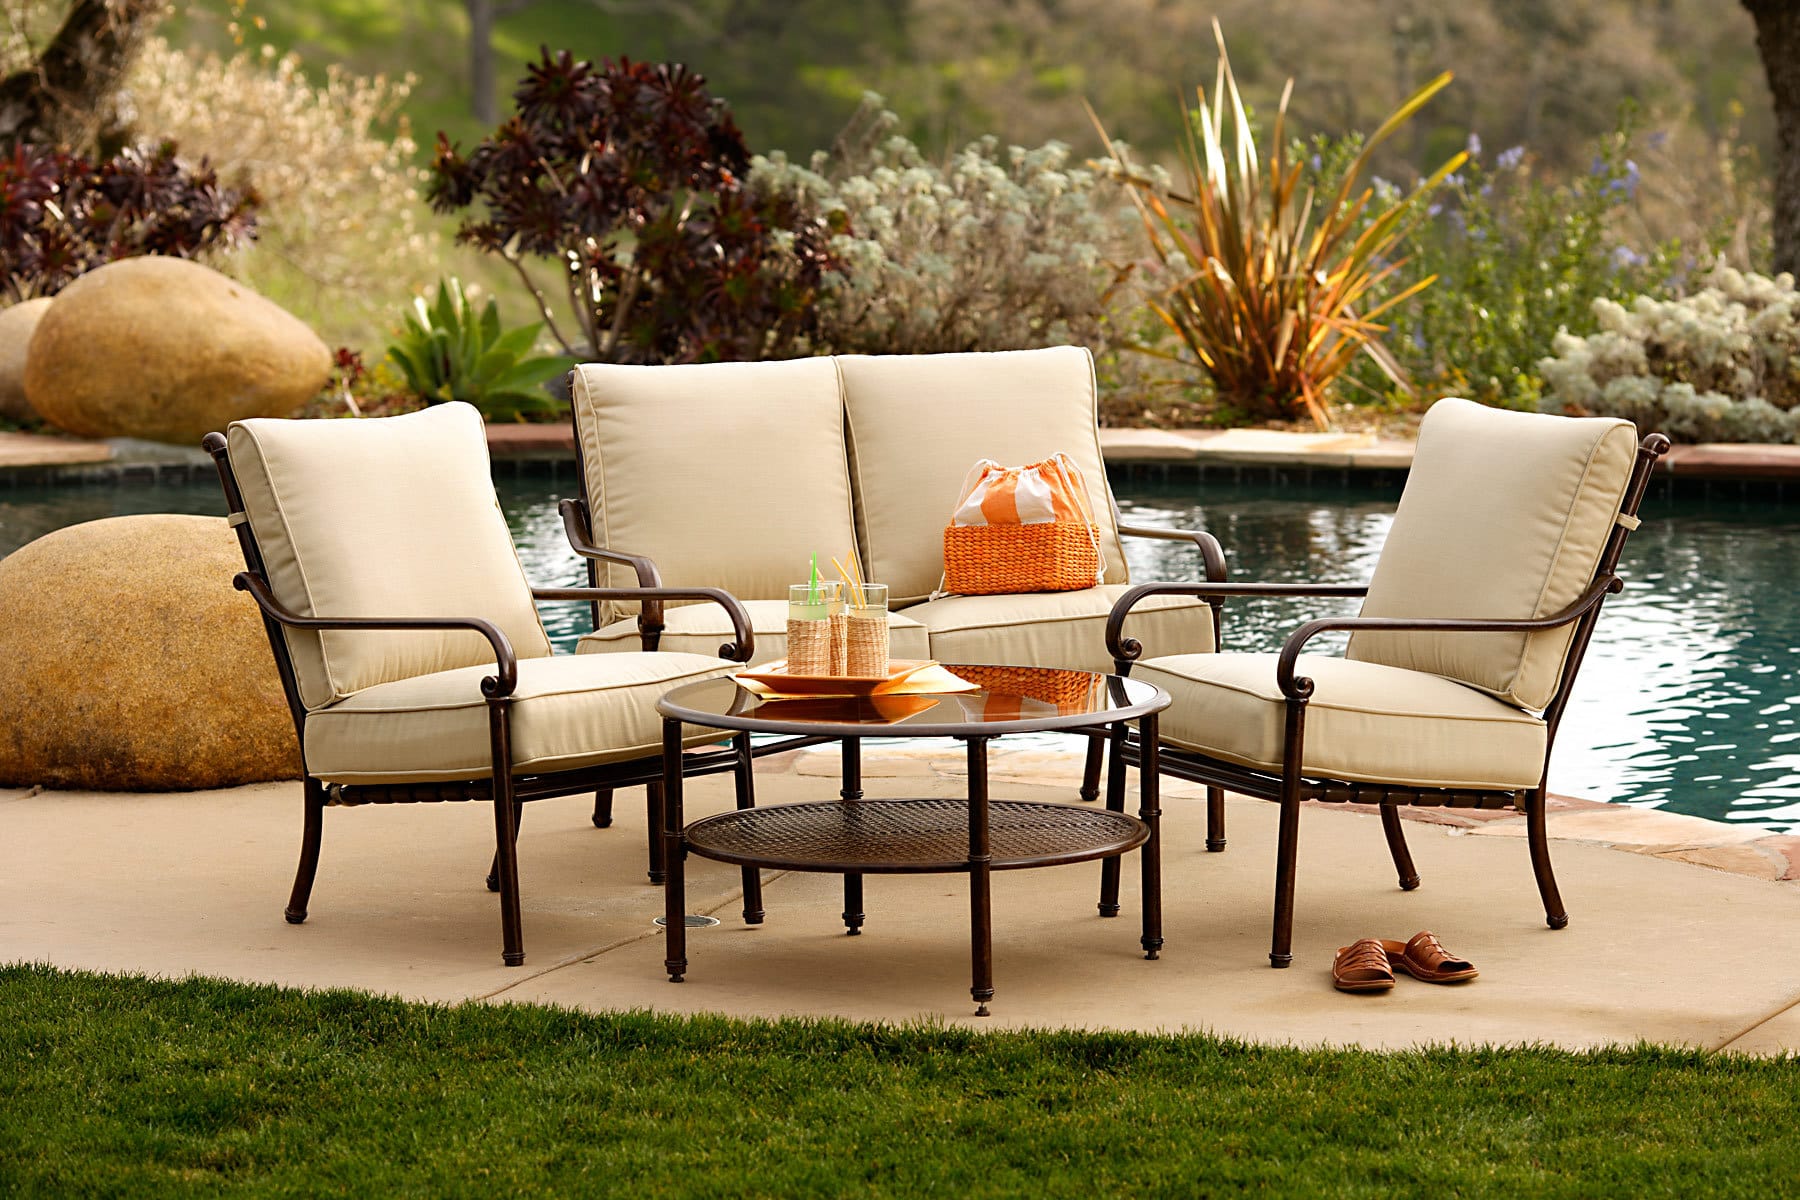 Outdoor Patio Furniture Design